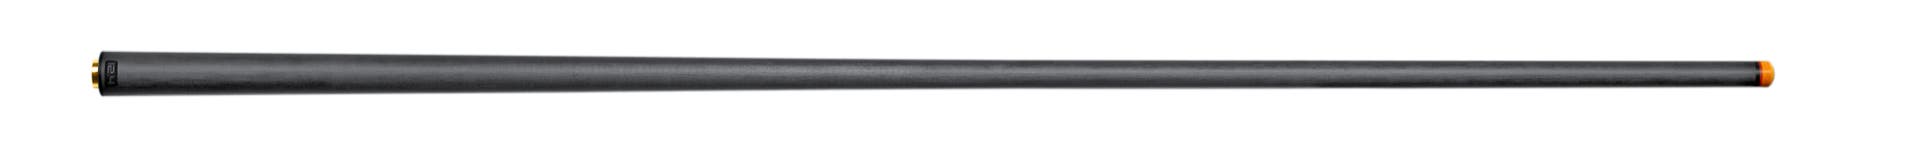 Predator REVO 12.4 mm Shaft for Uni-Loc Bullet Joint - Black Vault Plate